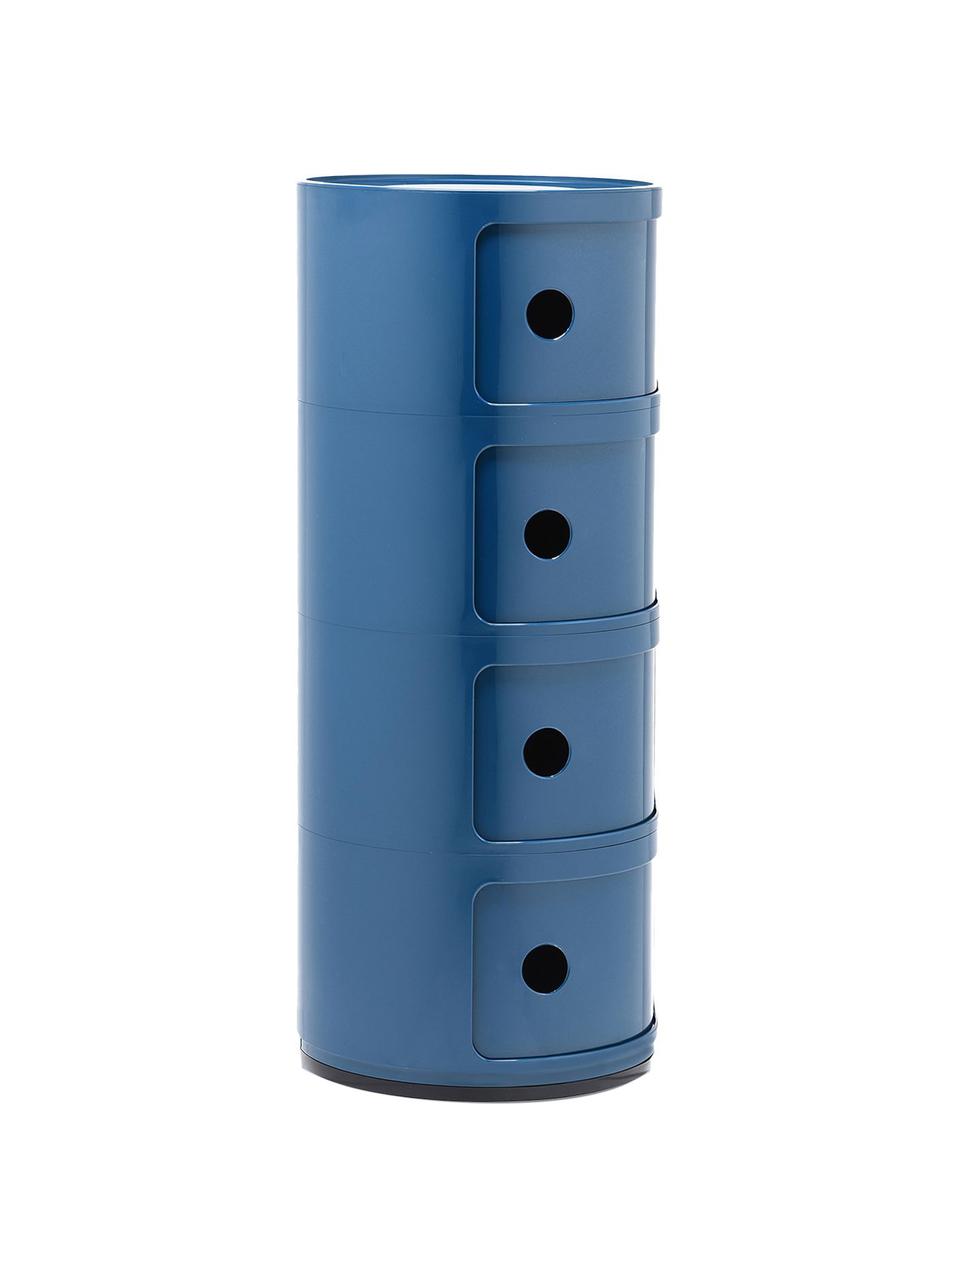 Design Container Componibili, 4 Elemente, Kunststoff, Greenguard-zertifiziert, Blau, glänzend, Ø 32 x H 77 cm